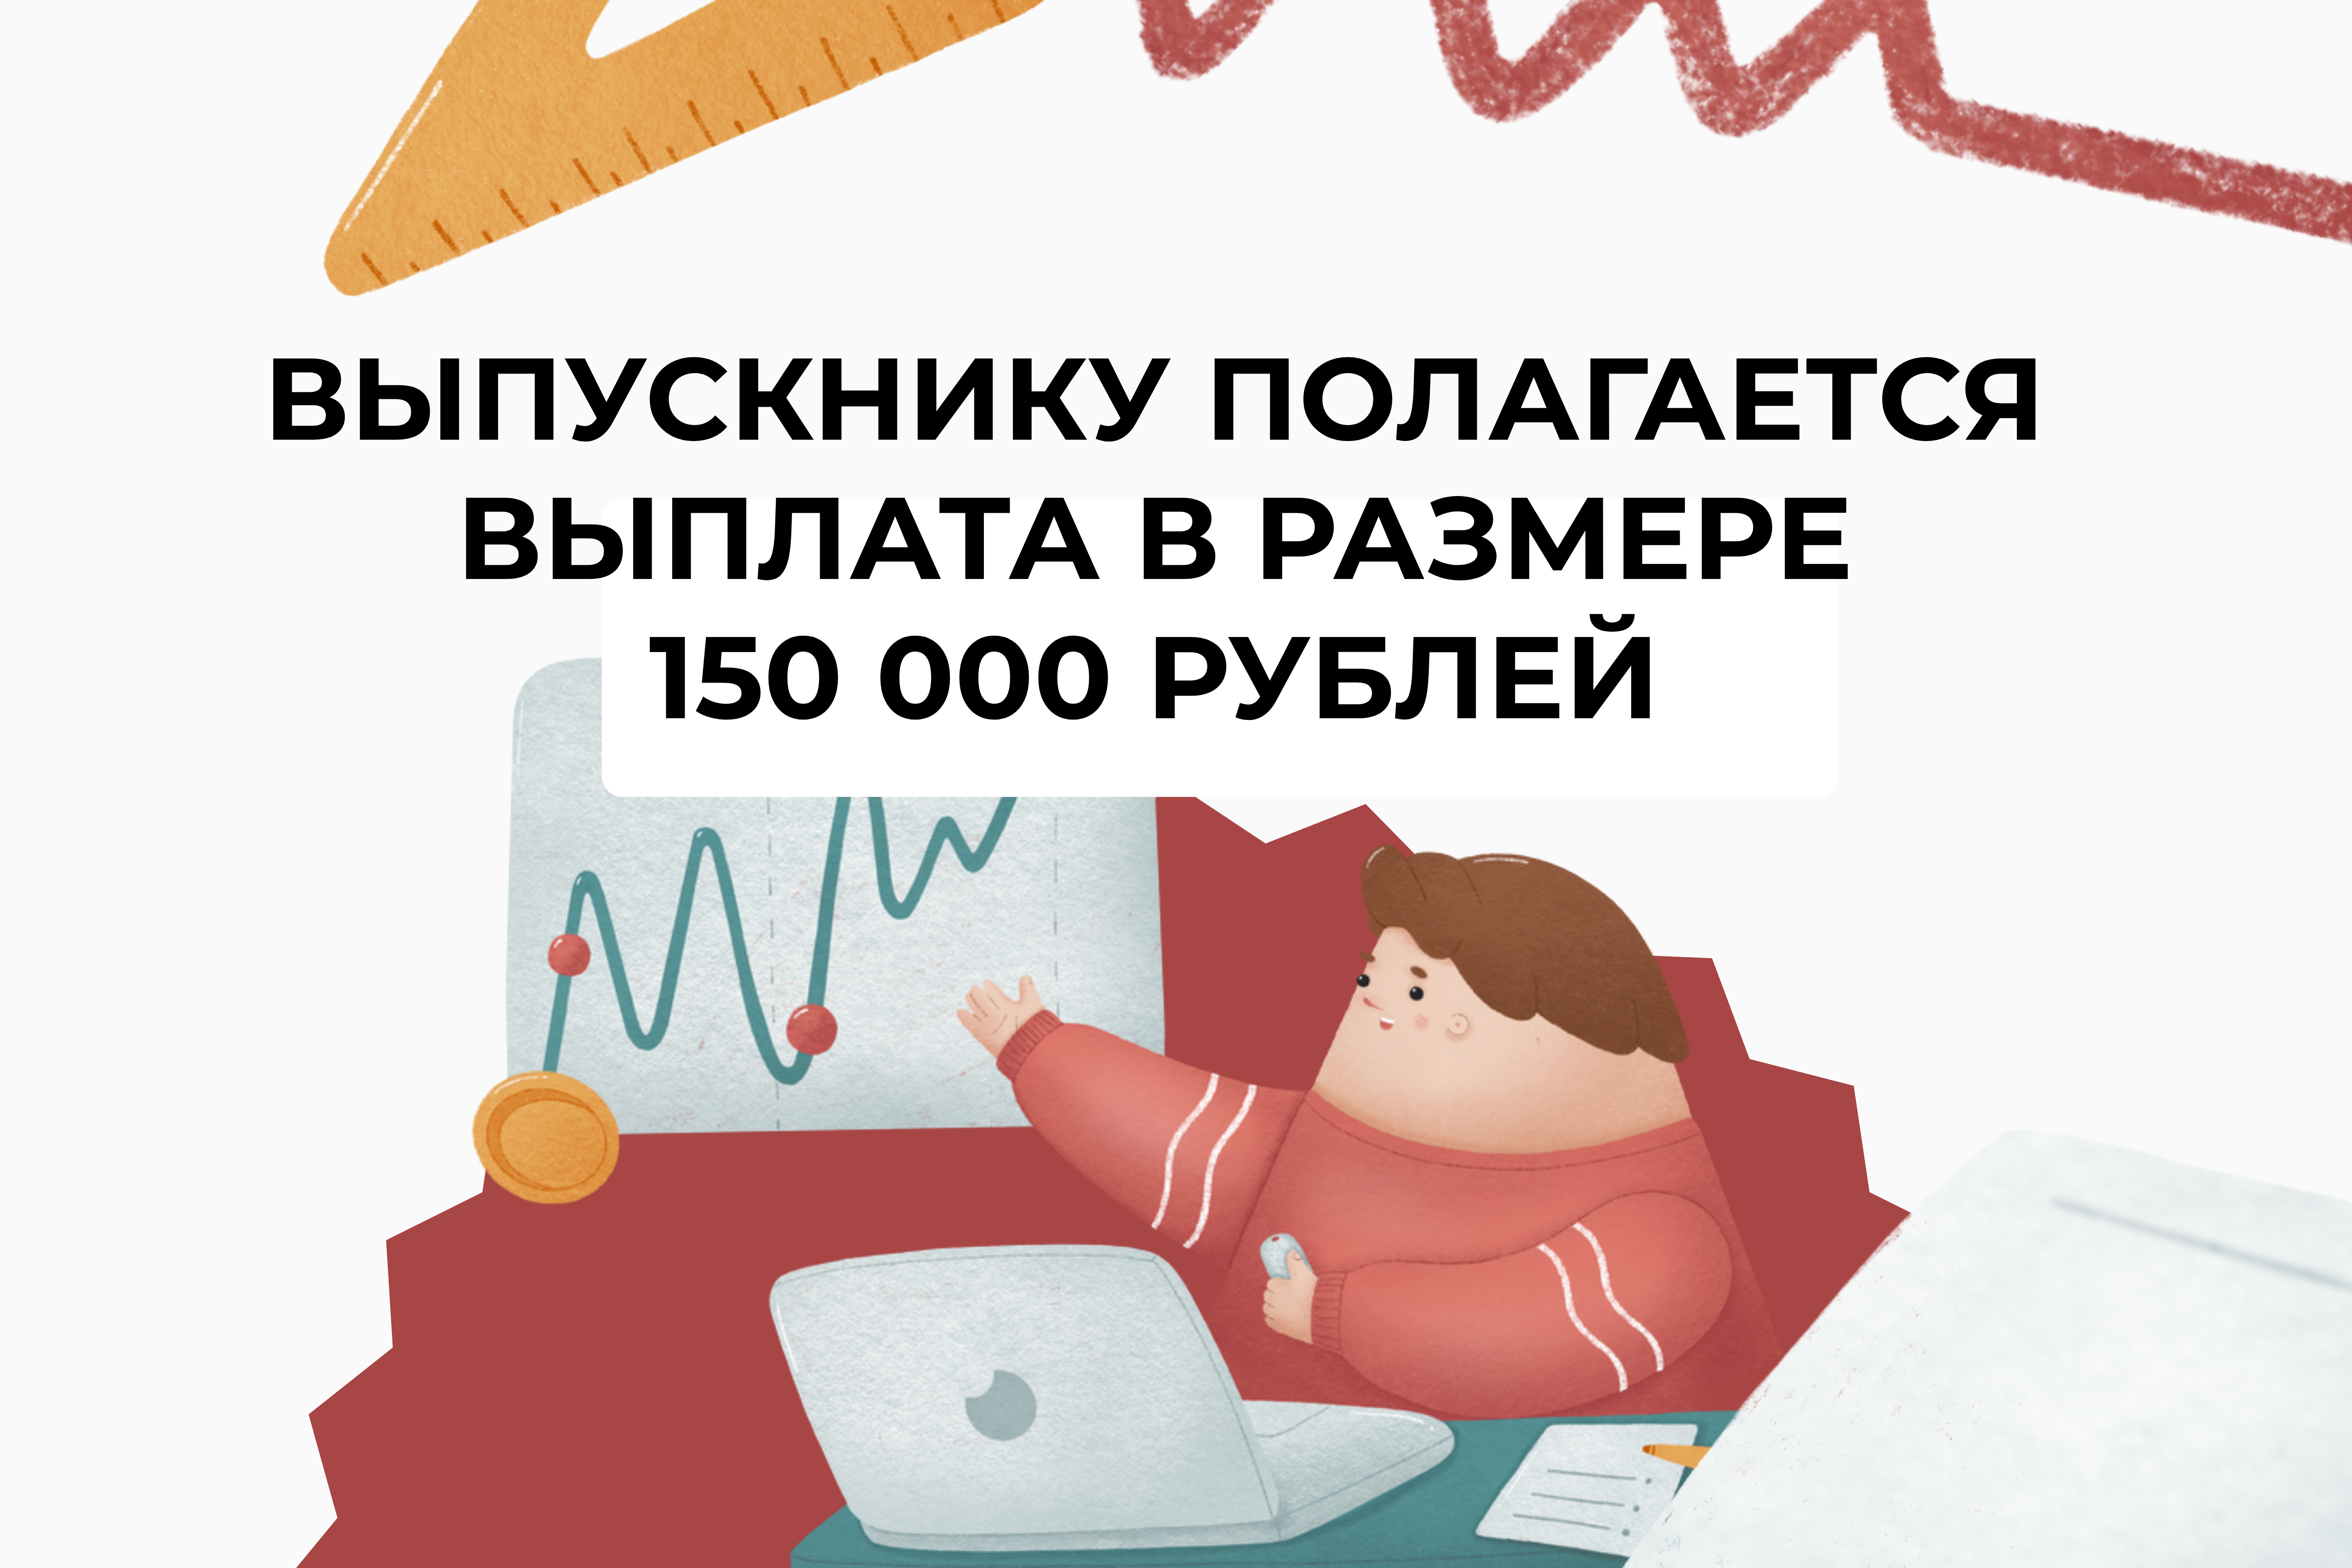 А вы знали, что выпускнику, после окончания вуза, полагается выплата в размере 150 000 рублей?